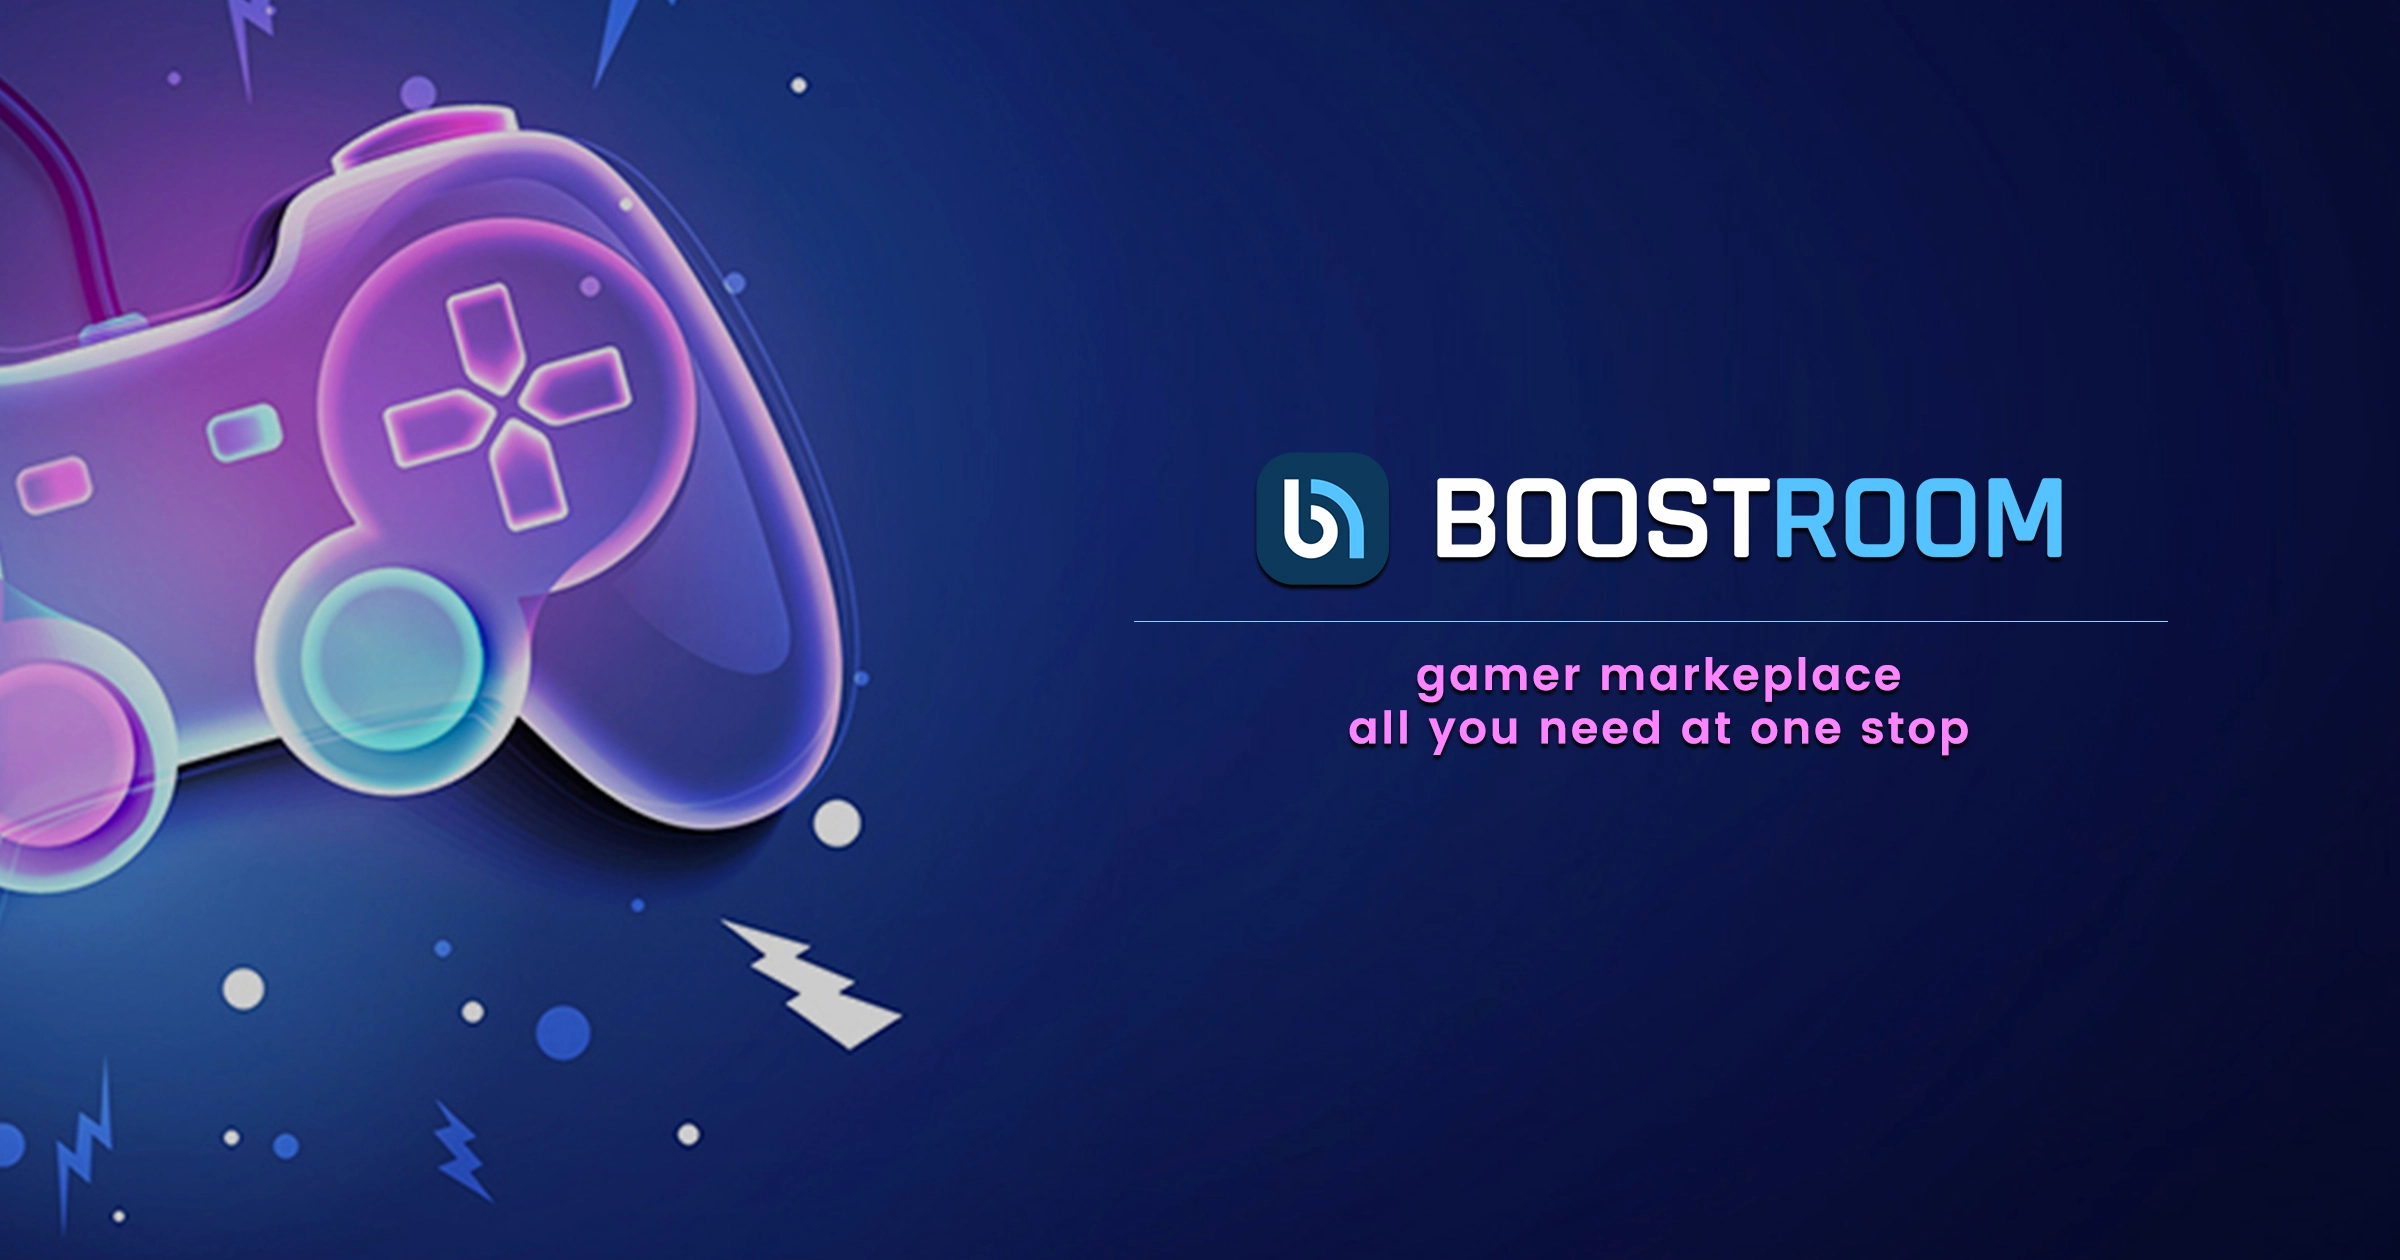 BroomingBoost - Video Game Shop